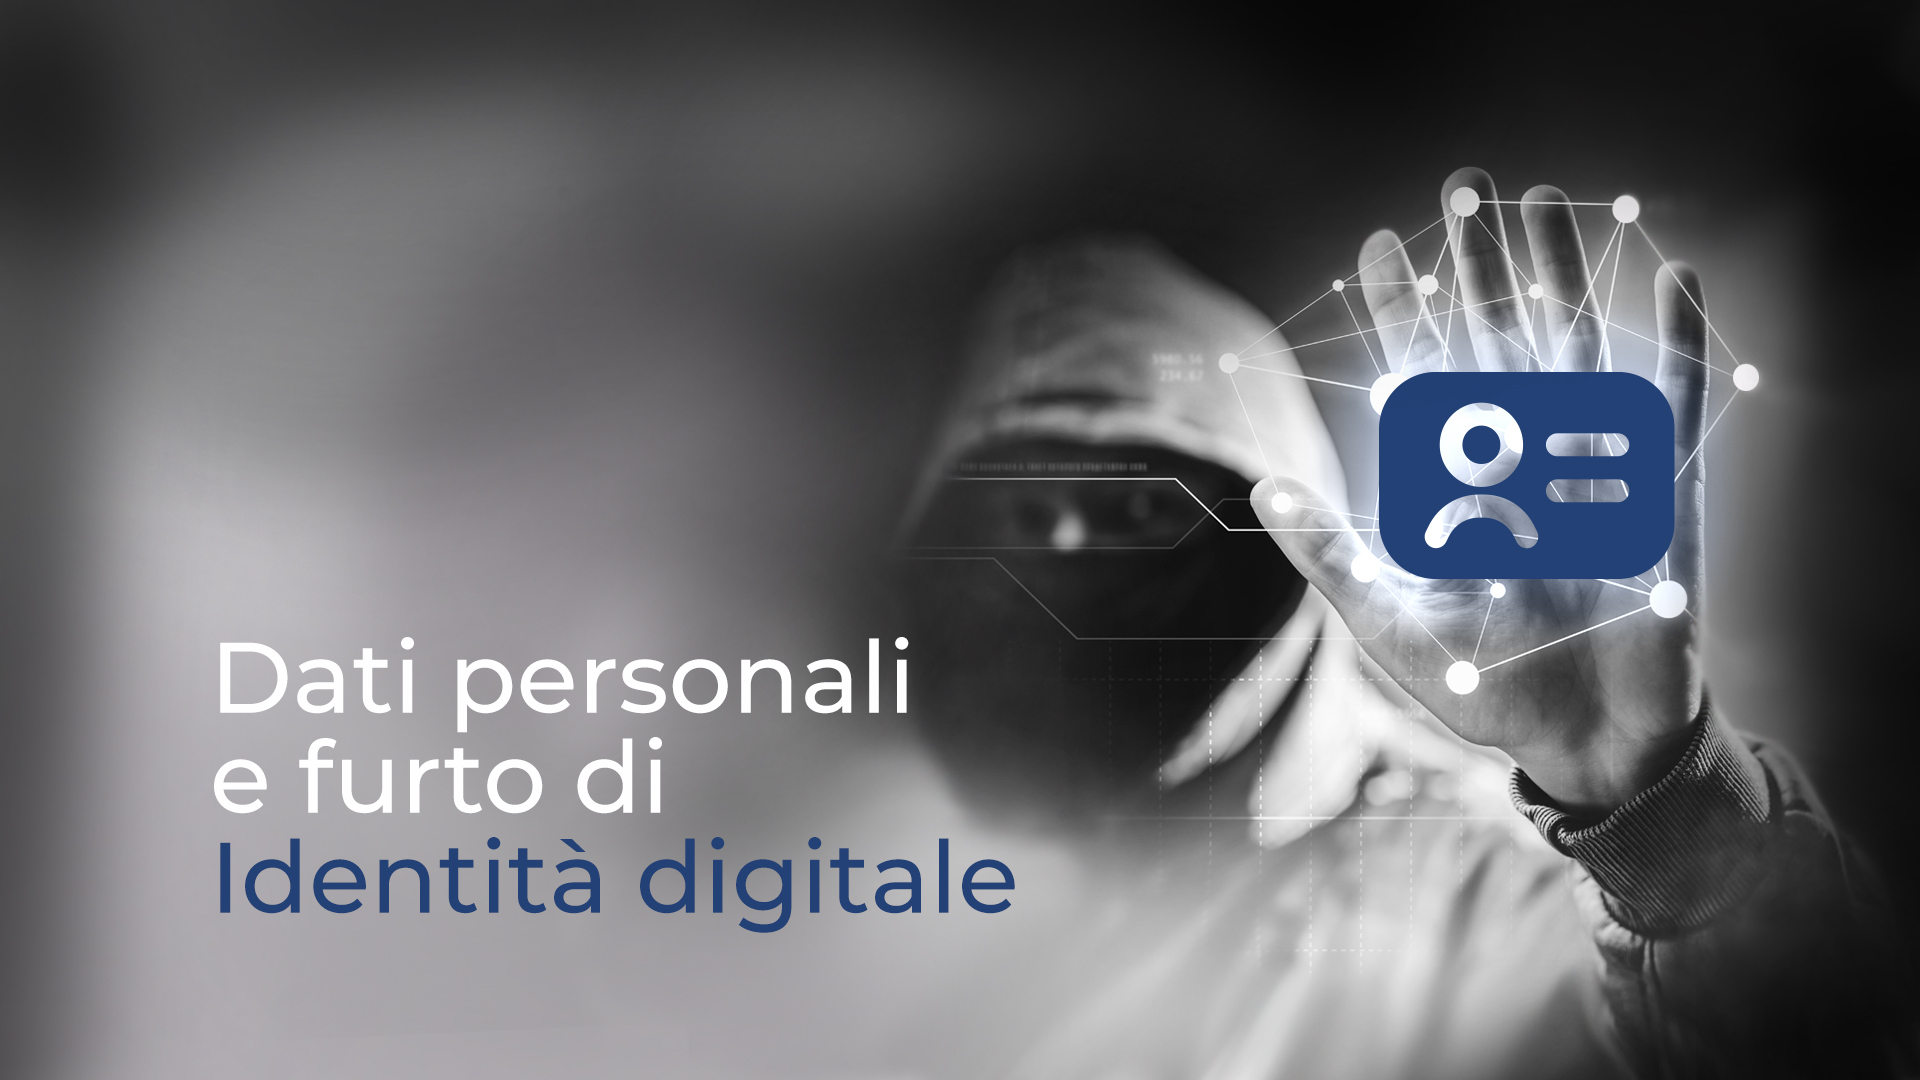 strong authentication - Dati personali e identità digitale